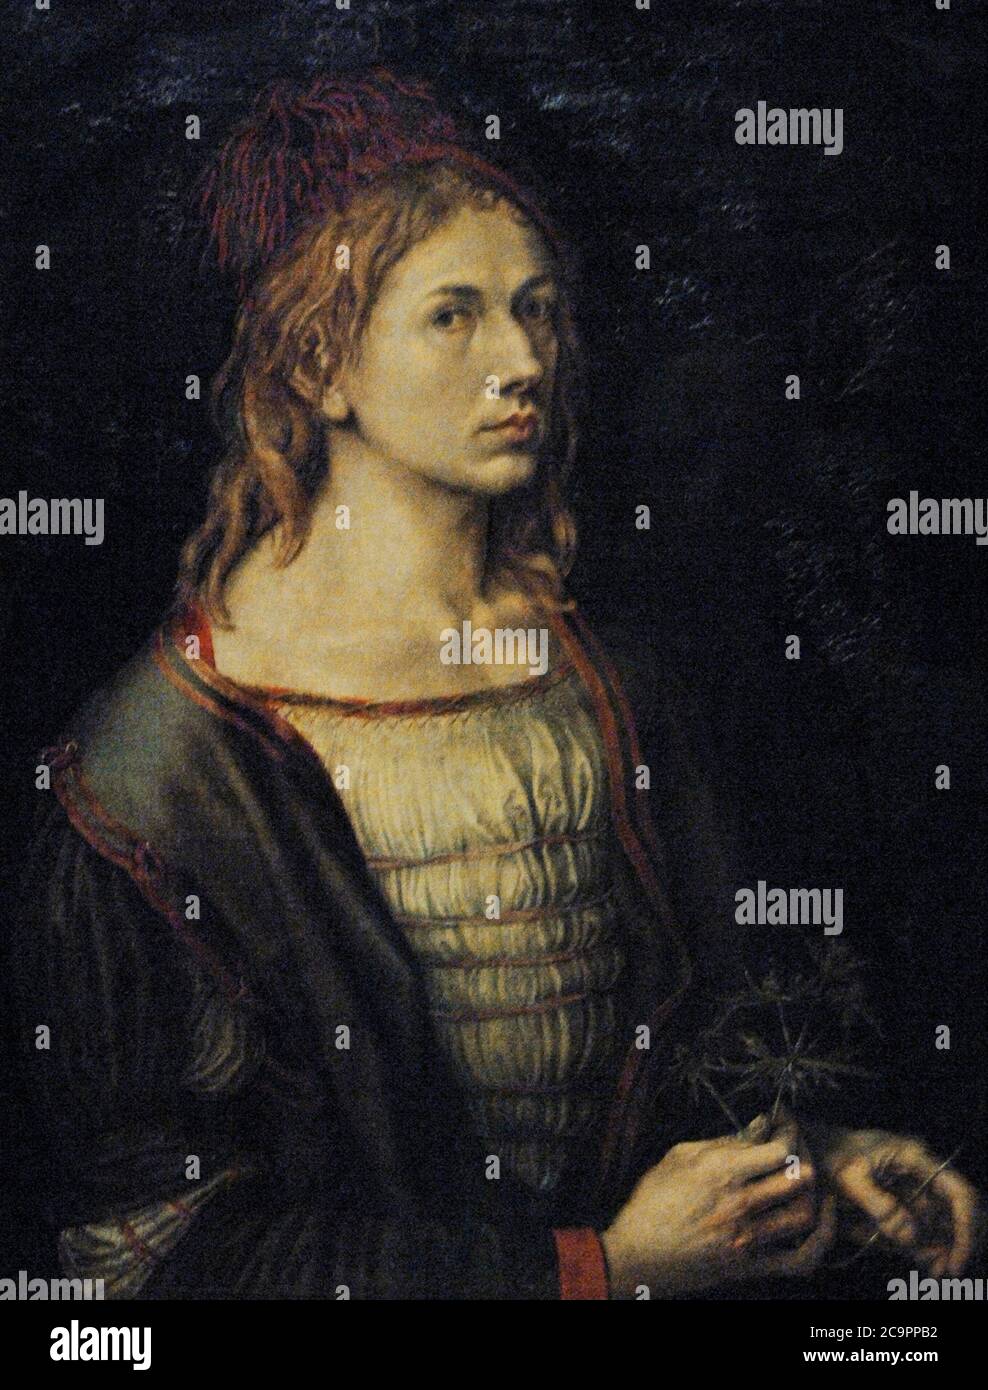 Alberto Durero (1471-1528). Pintor y grabador alemán. Retrato del artista,1493. Museo del Louvre. París. Francia. Stock Photo